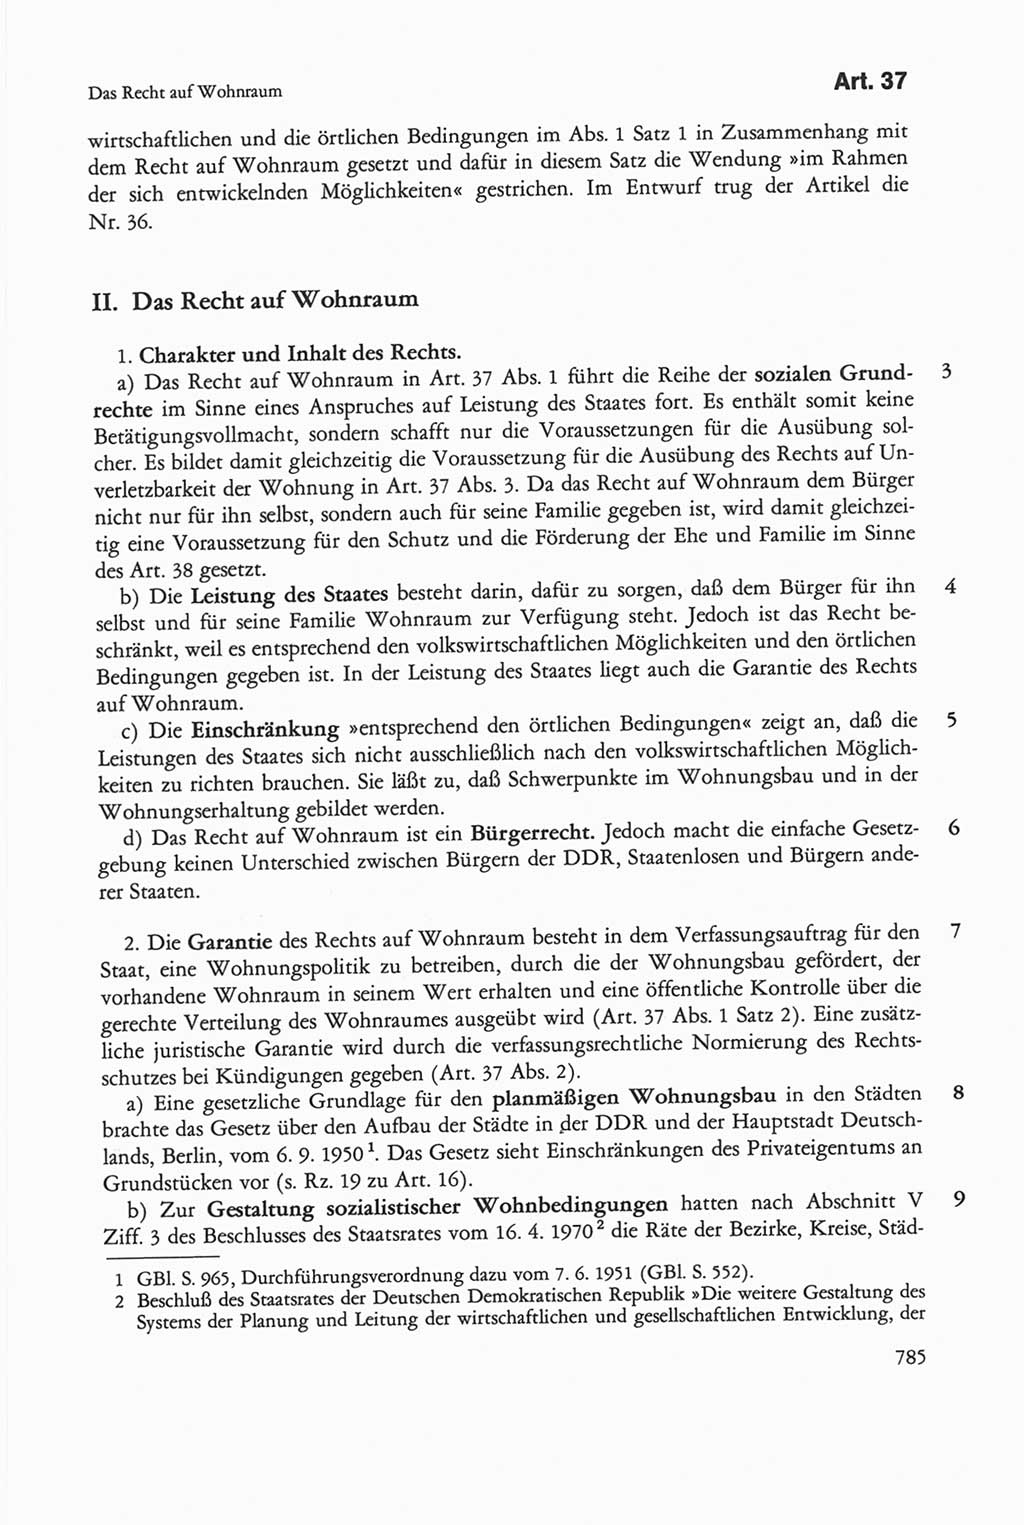 Die sozialistische Verfassung der Deutschen Demokratischen Republik (DDR), Kommentar 1982, Seite 785 (Soz. Verf. DDR Komm. 1982, S. 785)